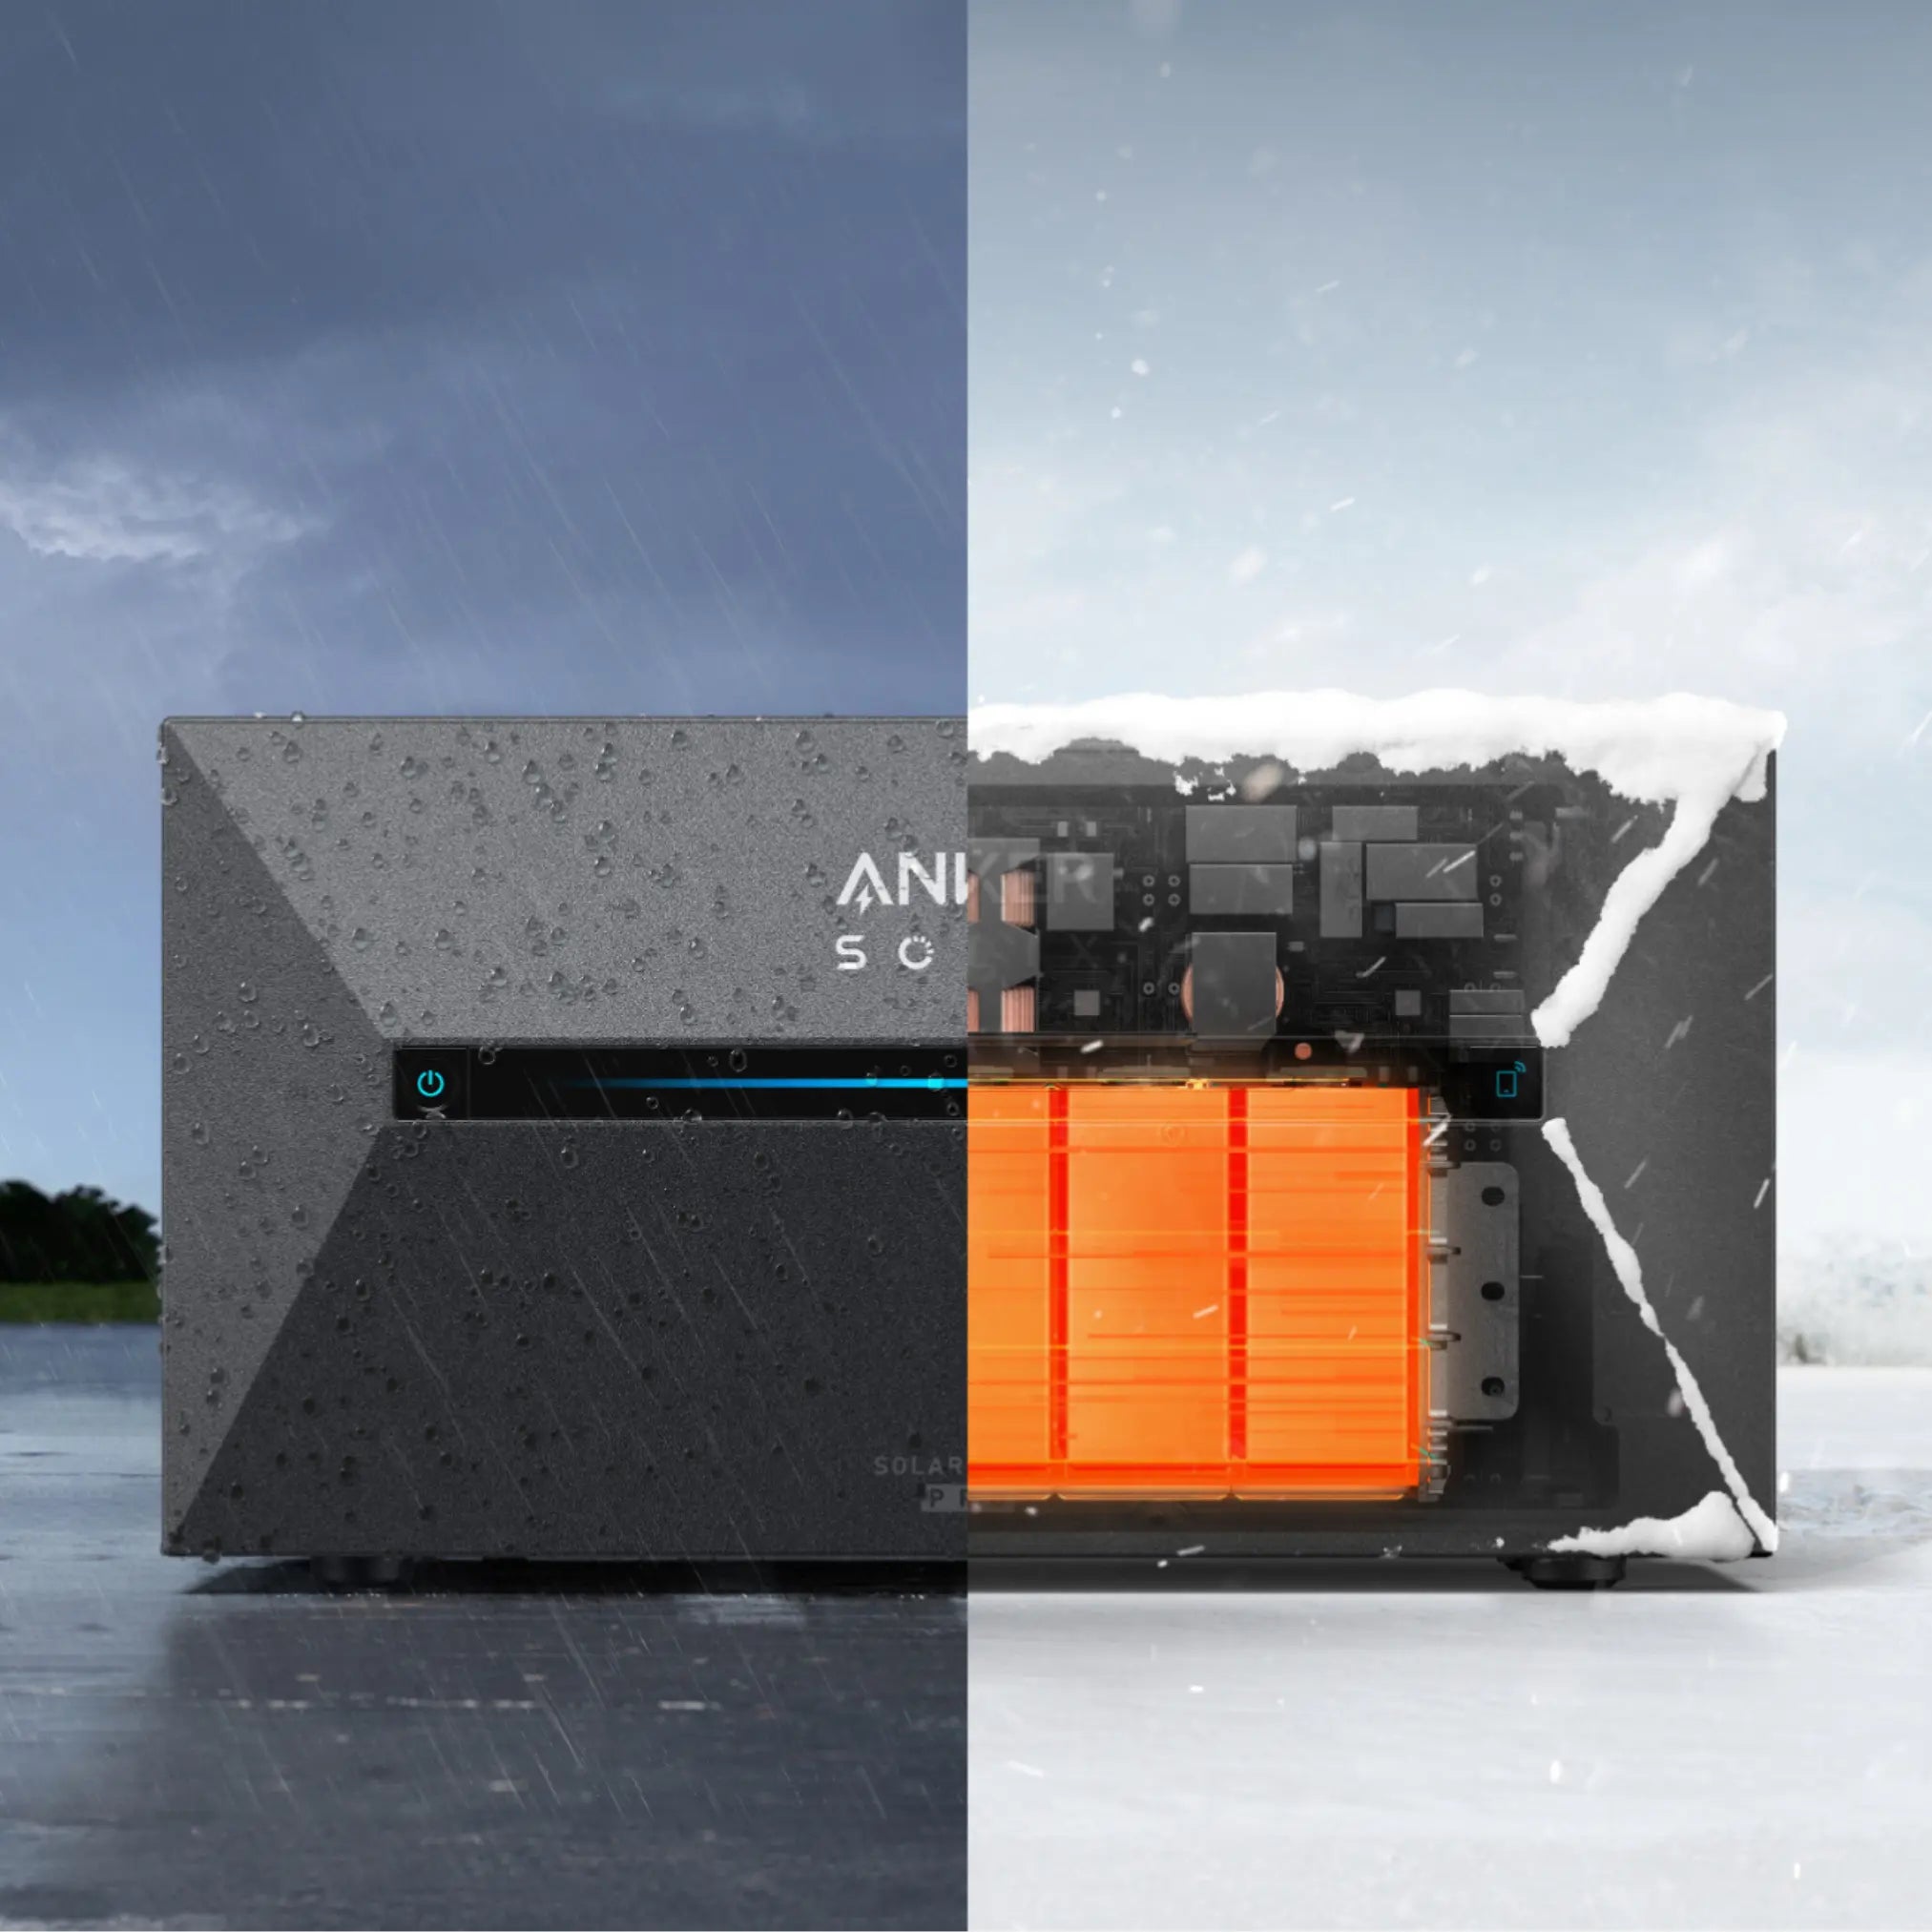 Anker SOLIX Solarbank 2 Pro Einsatz im Regen und bei Kälte